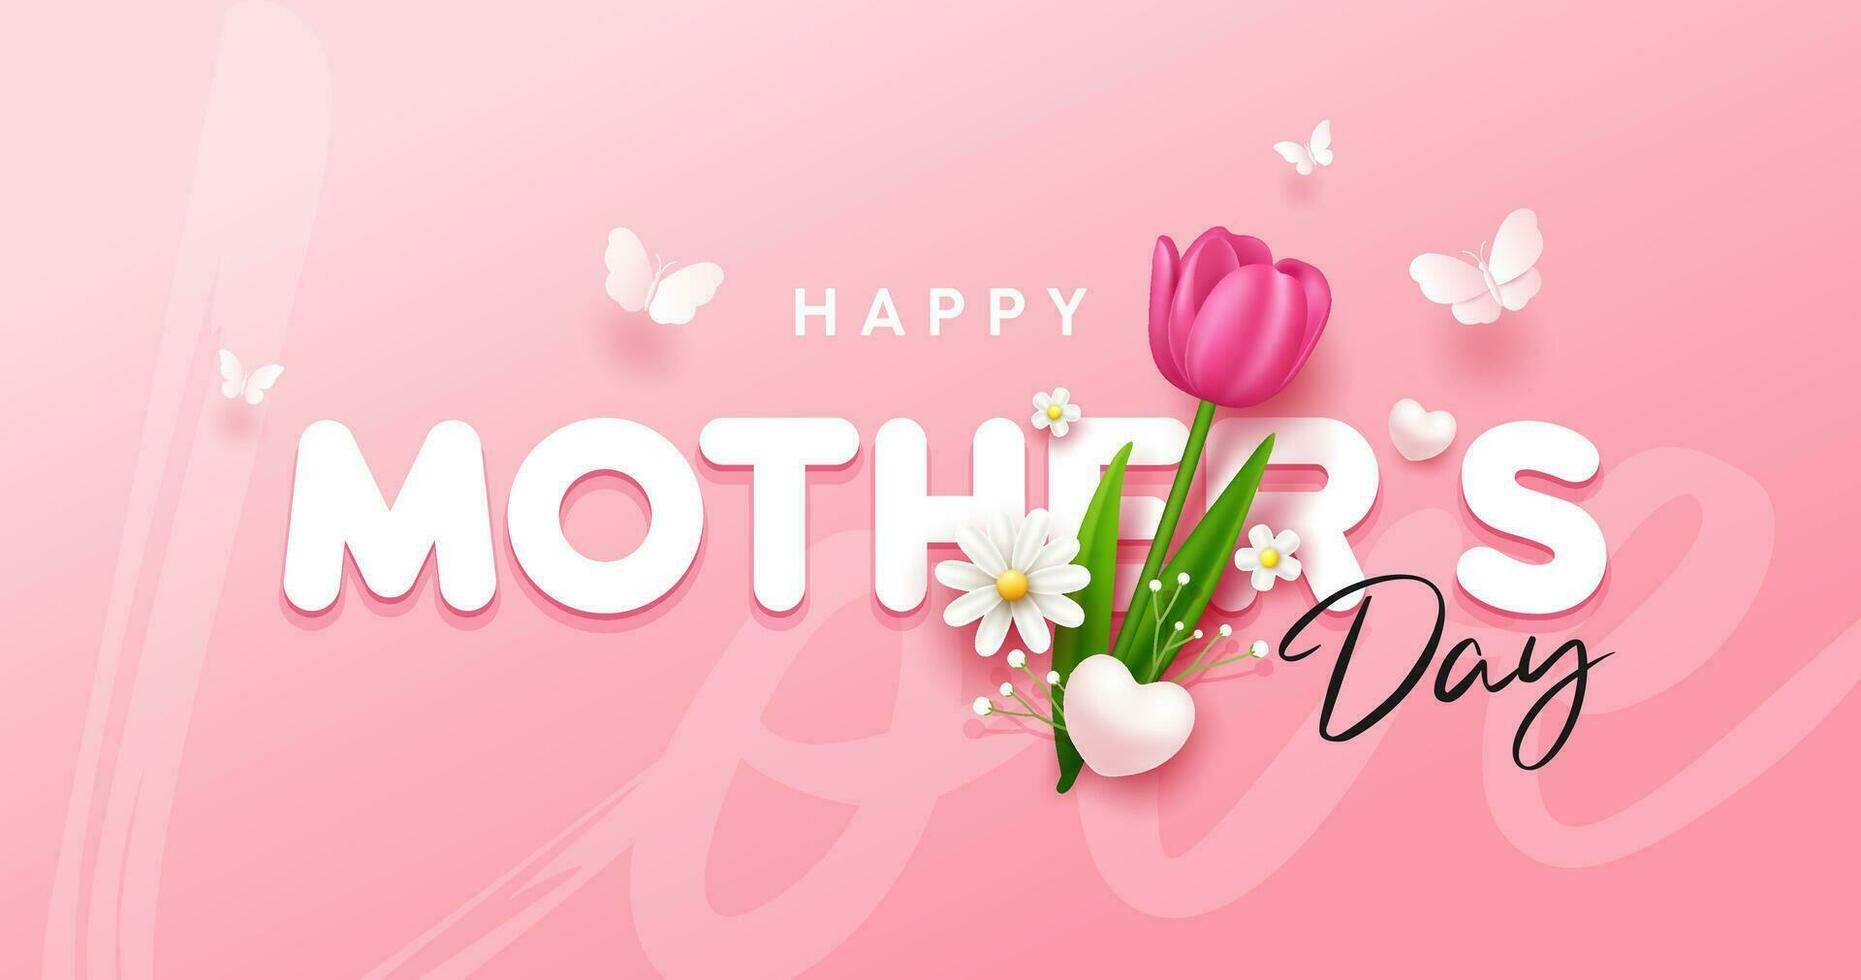 contento de la madre día con tulipán flores y mariposa bandera diseño en rosado fondo, eps10 vector ilustración.